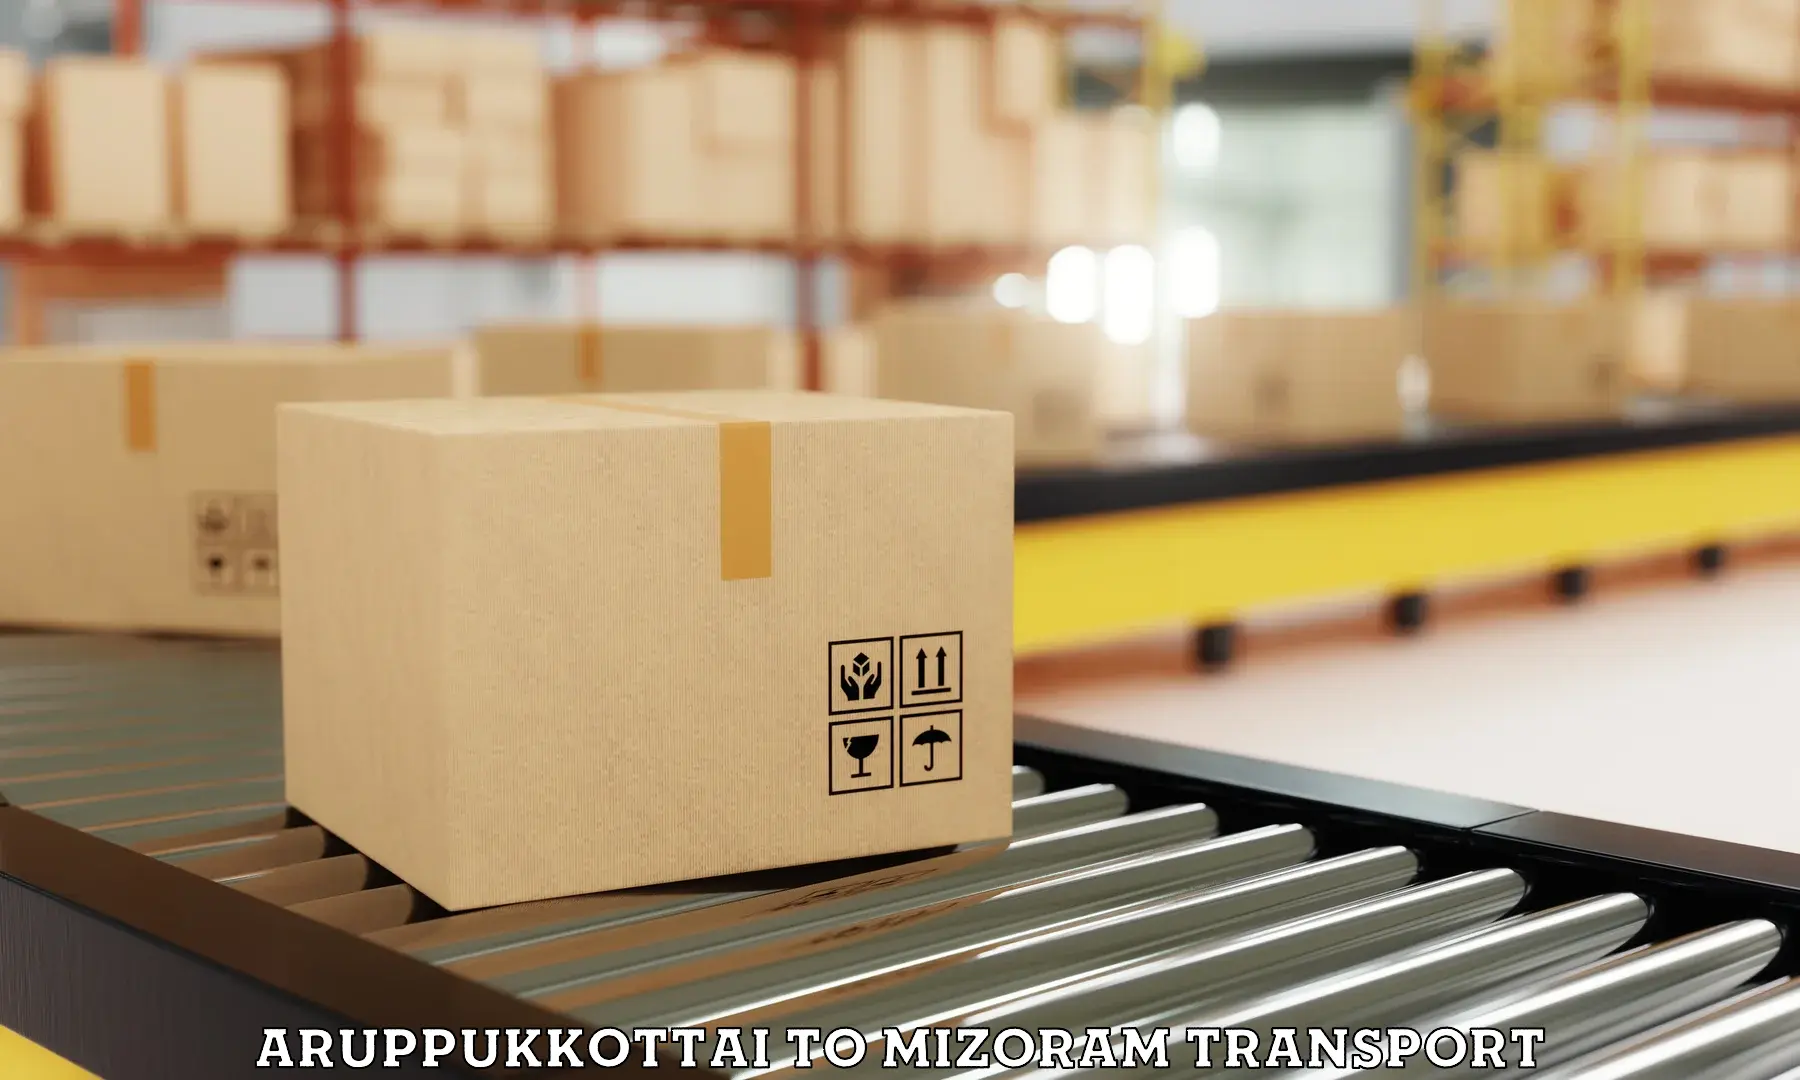 Furniture transport service Aruppukkottai to Kolasib